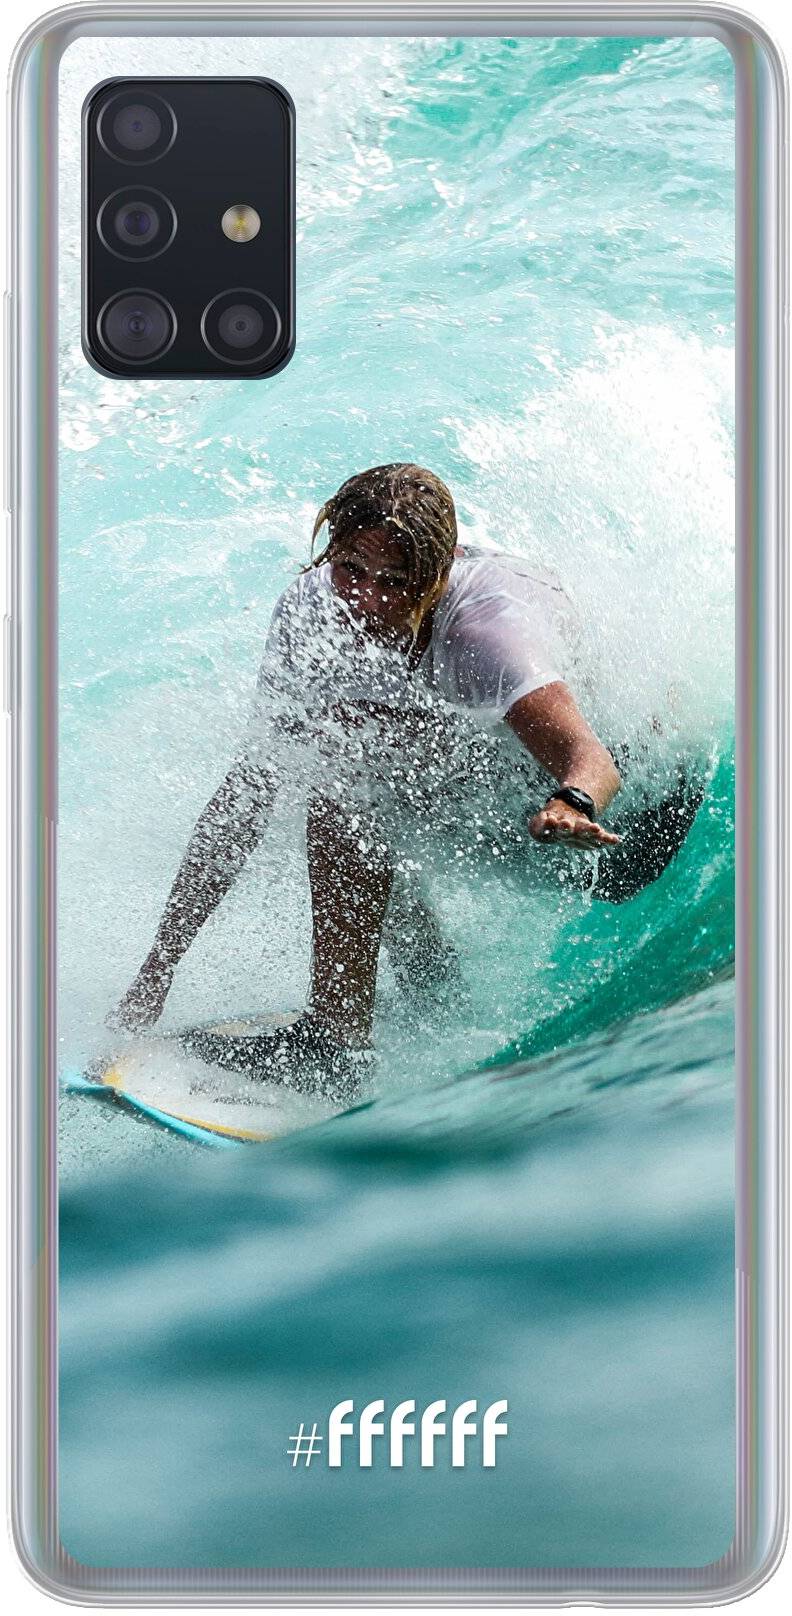 Boy Surfing Galaxy A51